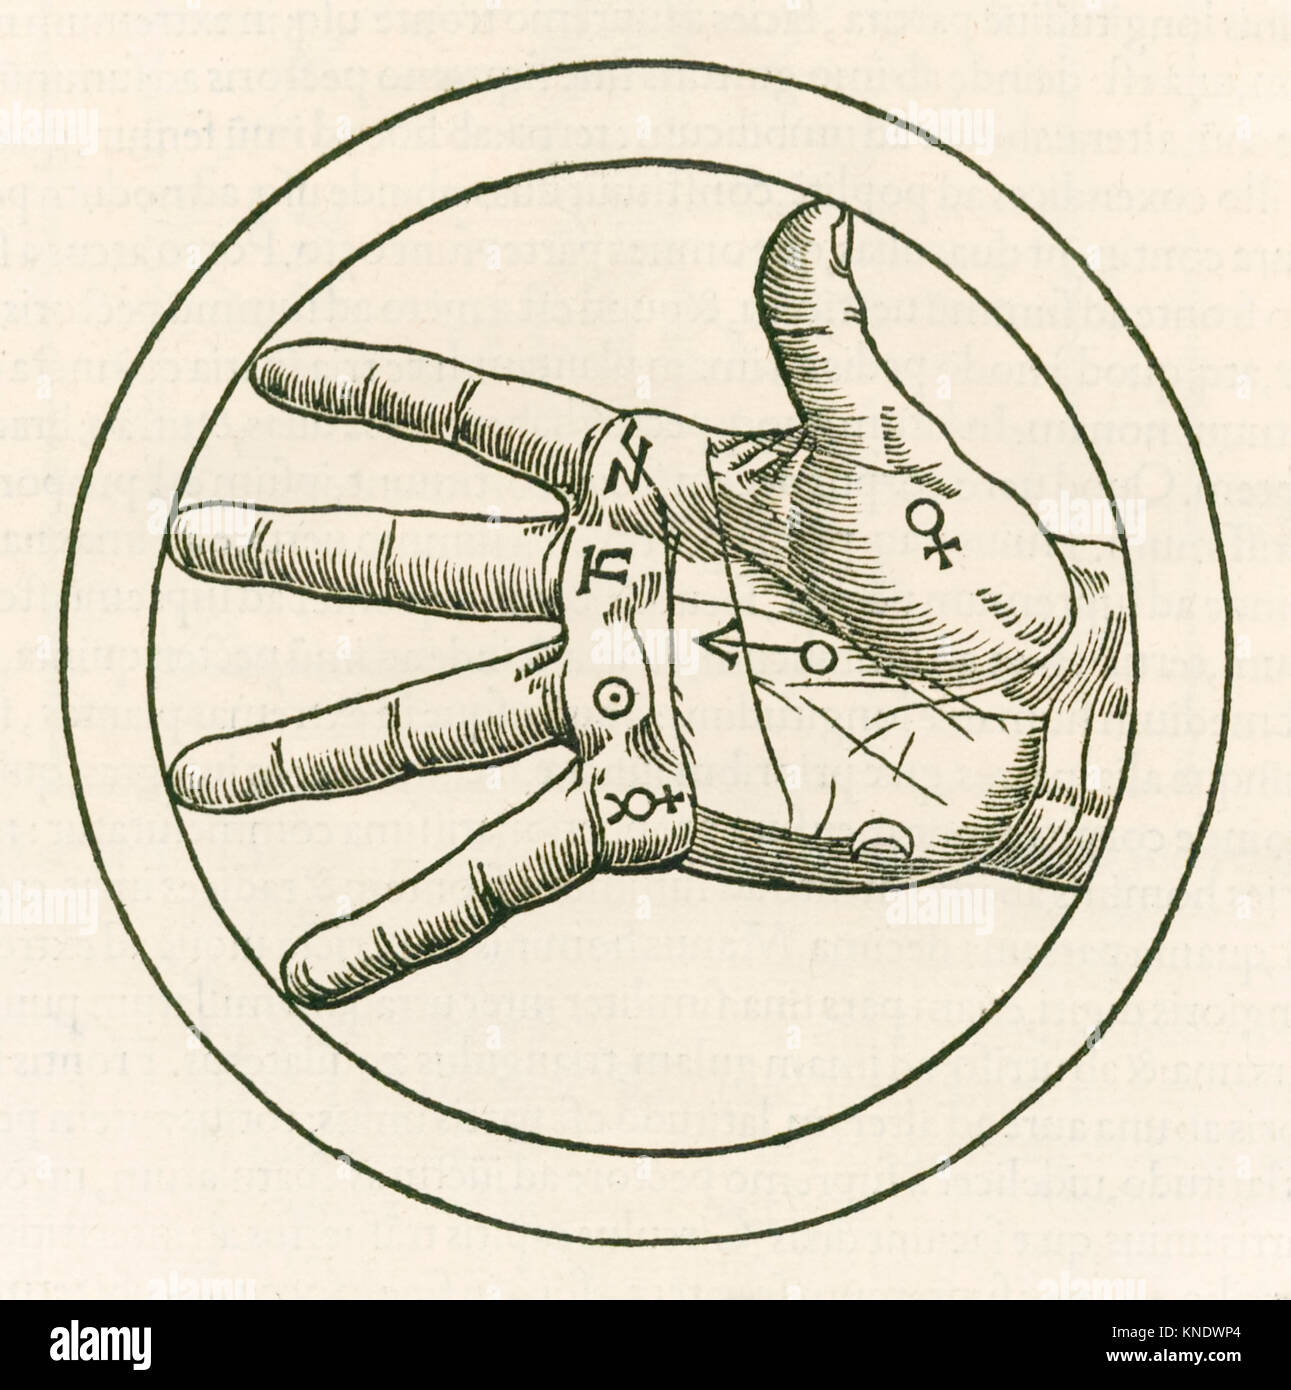 "La mano di chiromanzia' incisione da Heinrich Cornelius Agrippa von Nettesheim (1486-1535) "De occulta philosophia libri tres" (tre libri di filosofia occulta) pubblicato nel 1533. Vedere ulteriori informazioni qui di seguito. Foto Stock